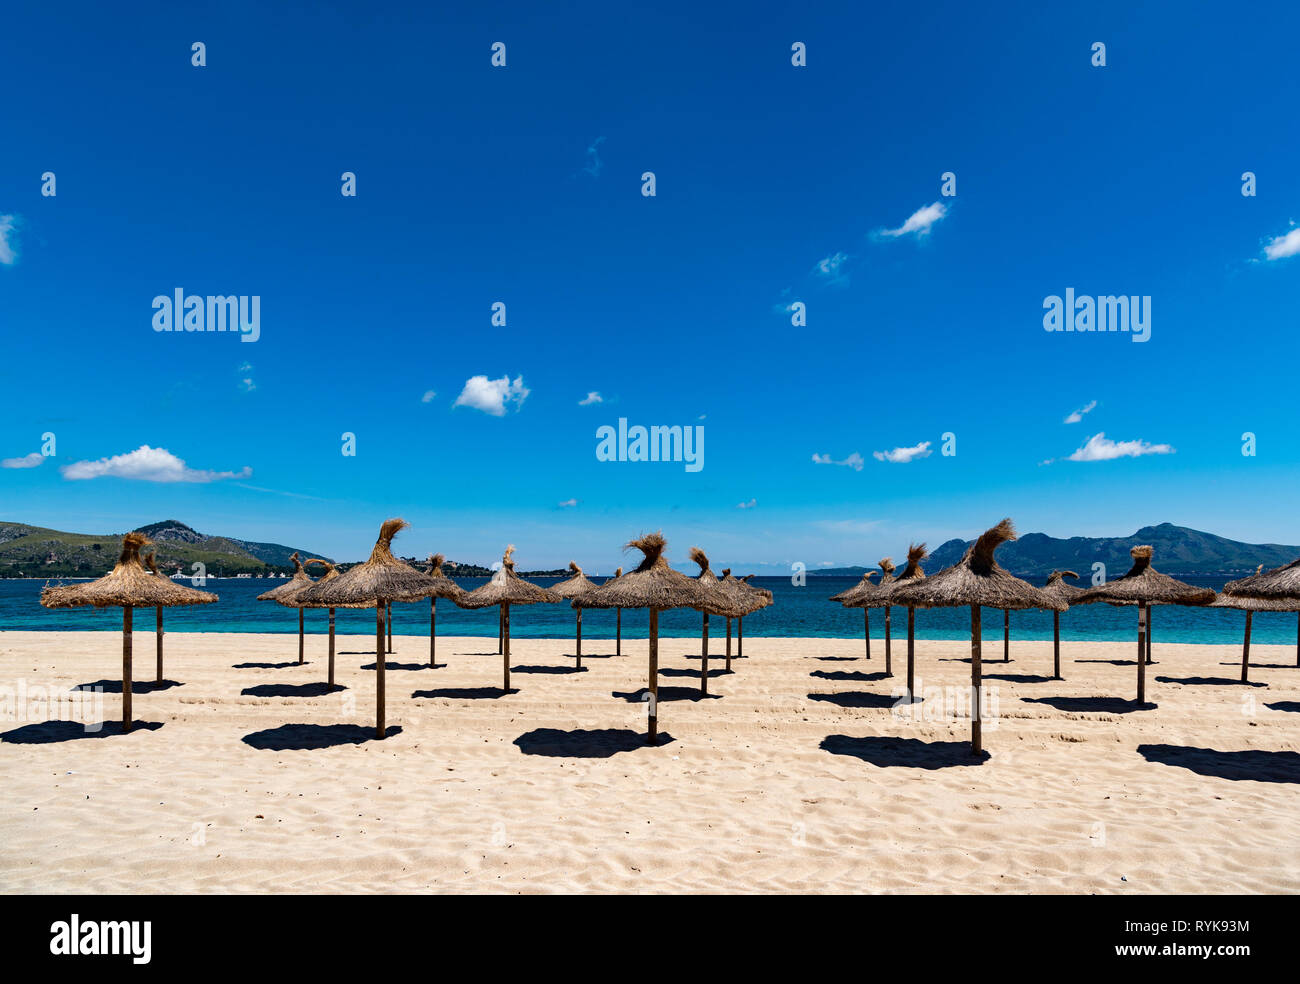 Sun umbrellas on a beach, Pollensa, Majorca, Spain. Stock Photo